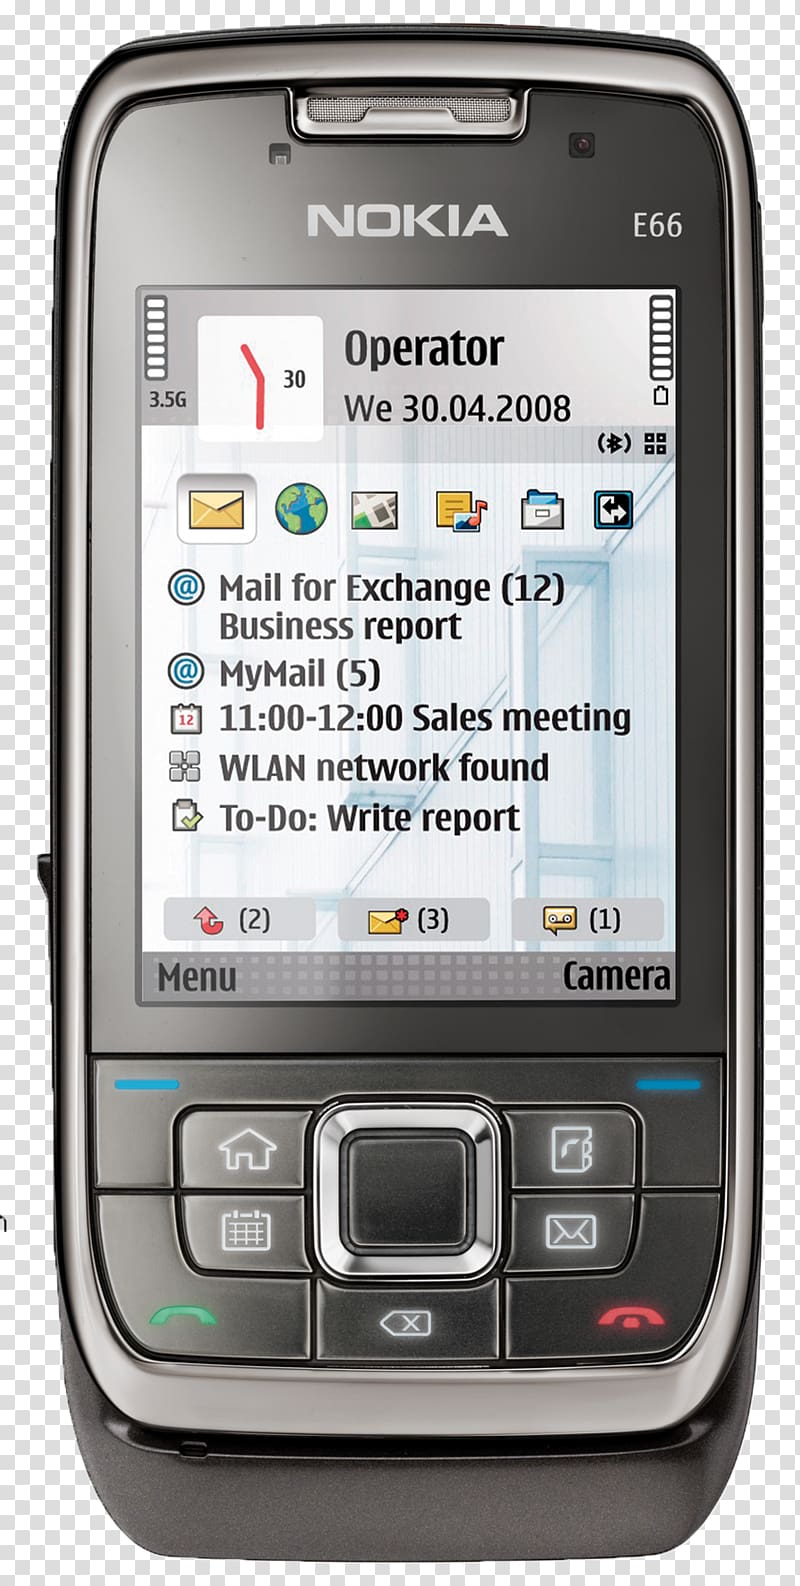 Nokia E71 Nokia E63 Nokia N96 Nokia E72, smartphone transparent background PNG clipart